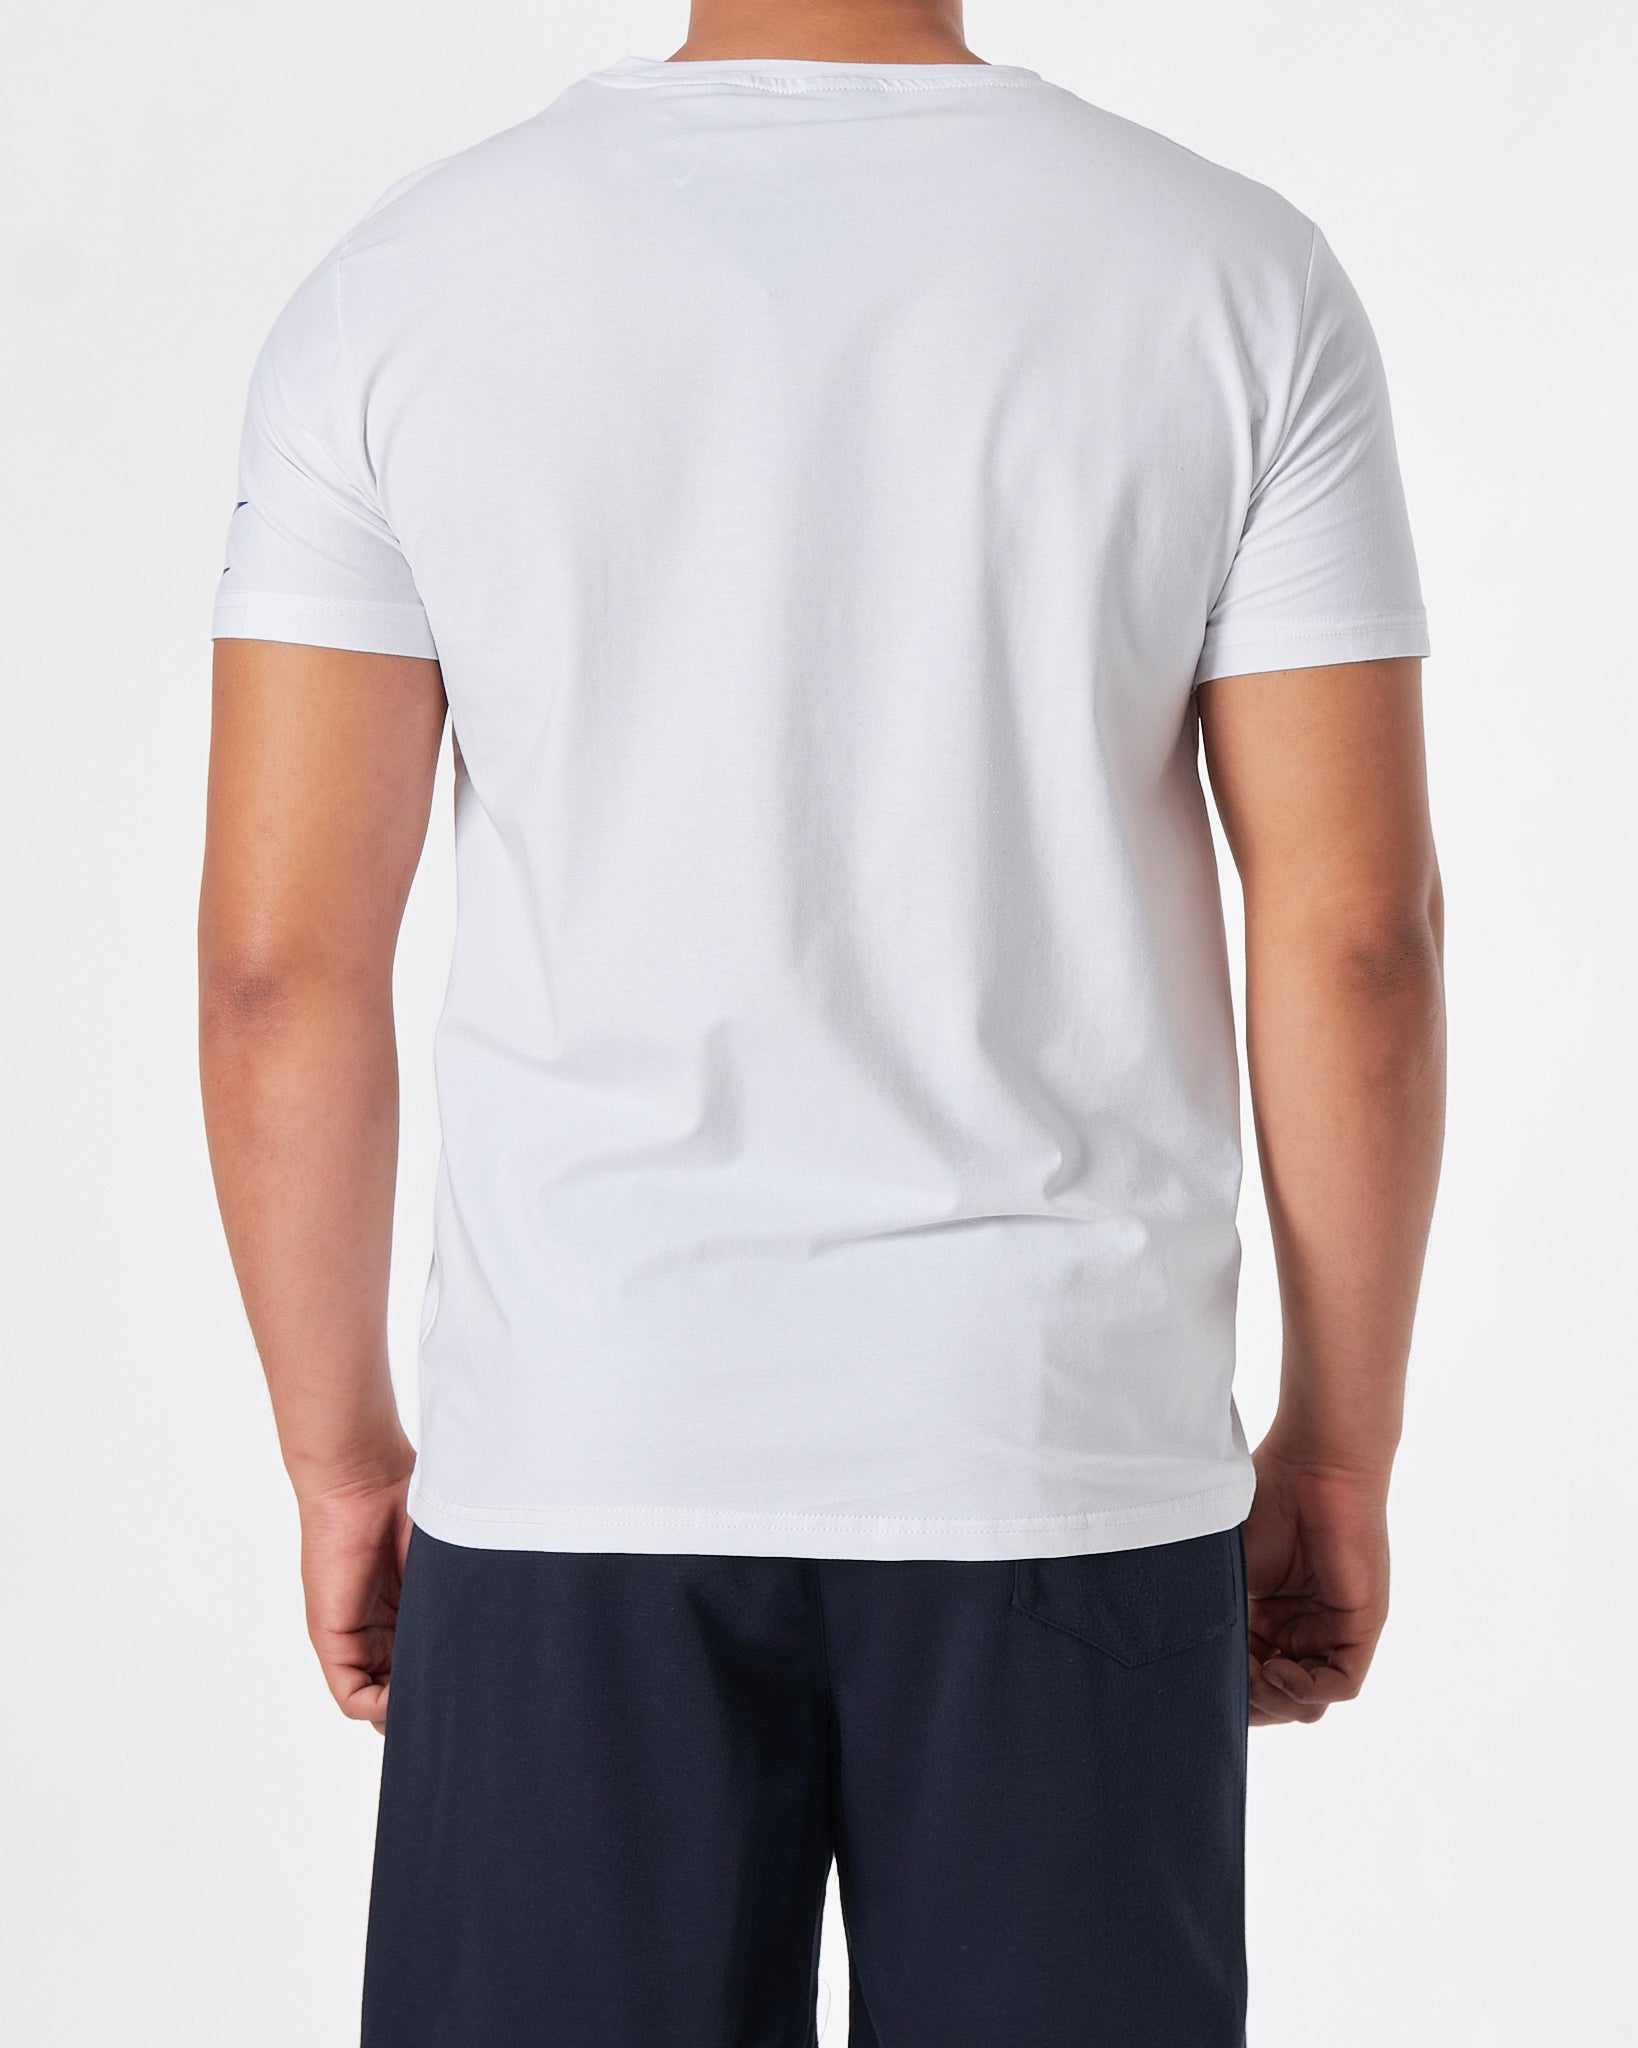 NIK Logo Printed Men White T-Shirt 15.90